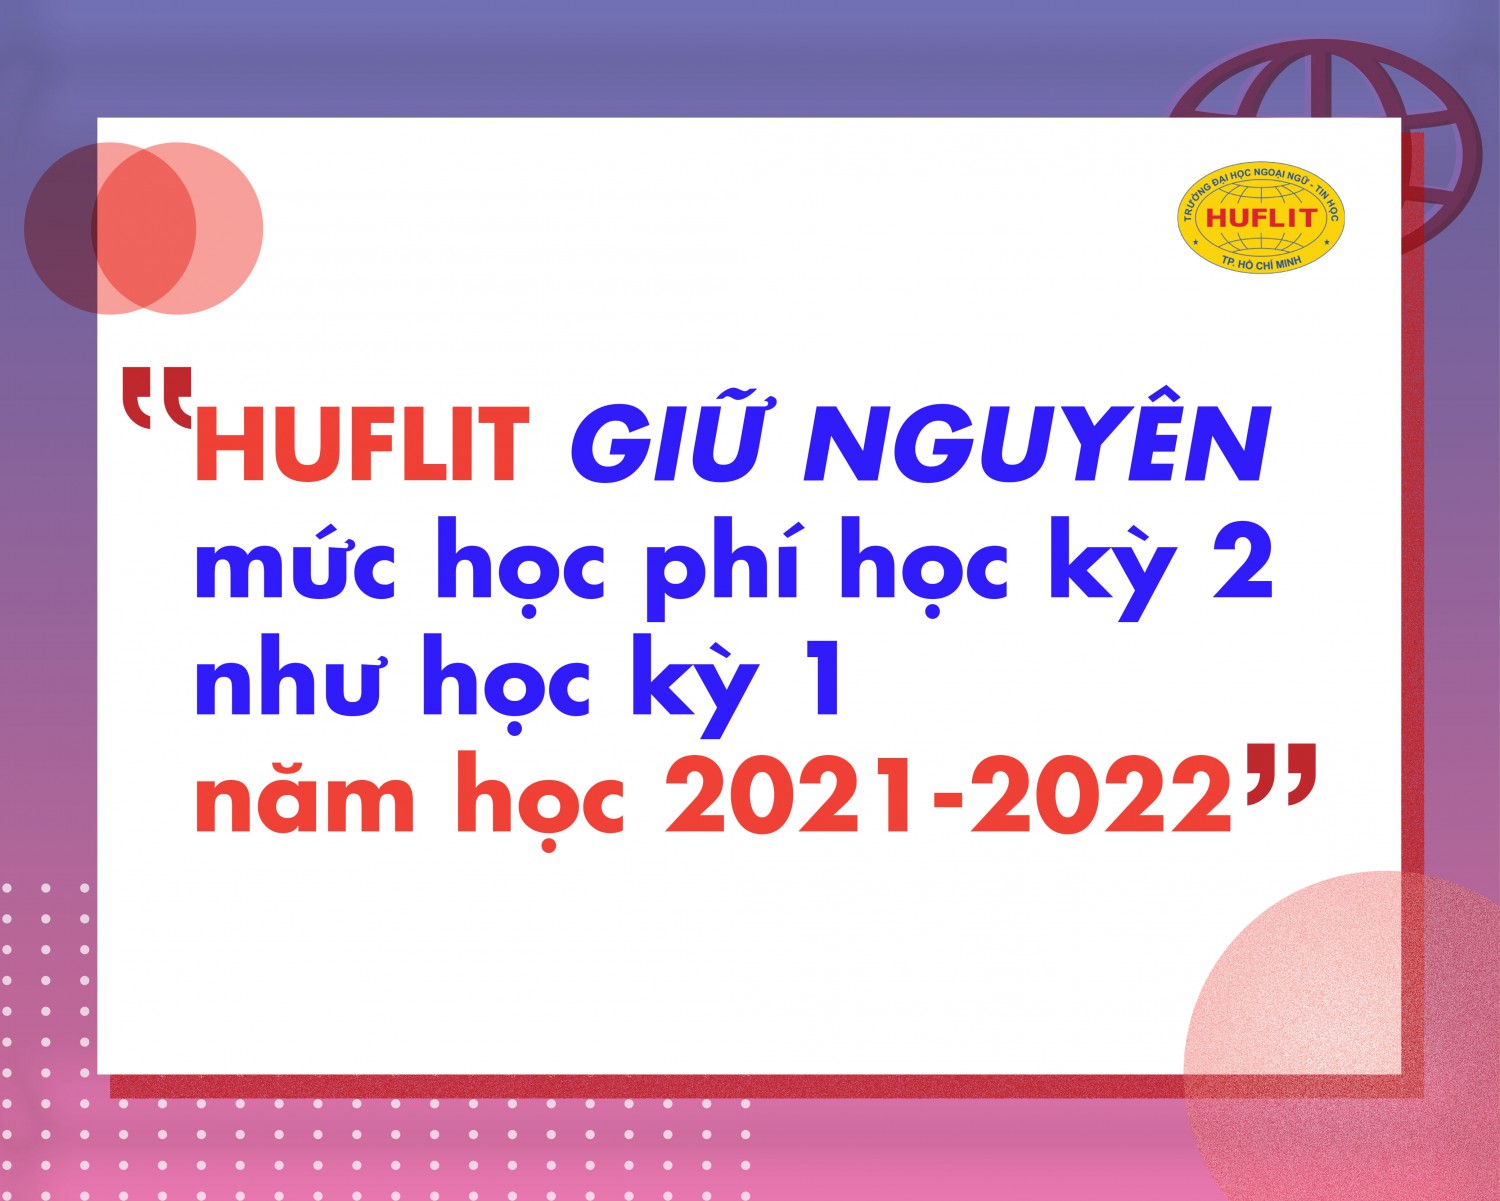 13.1.2022 HUFLIT giu nguyen muc hoc phi hk2